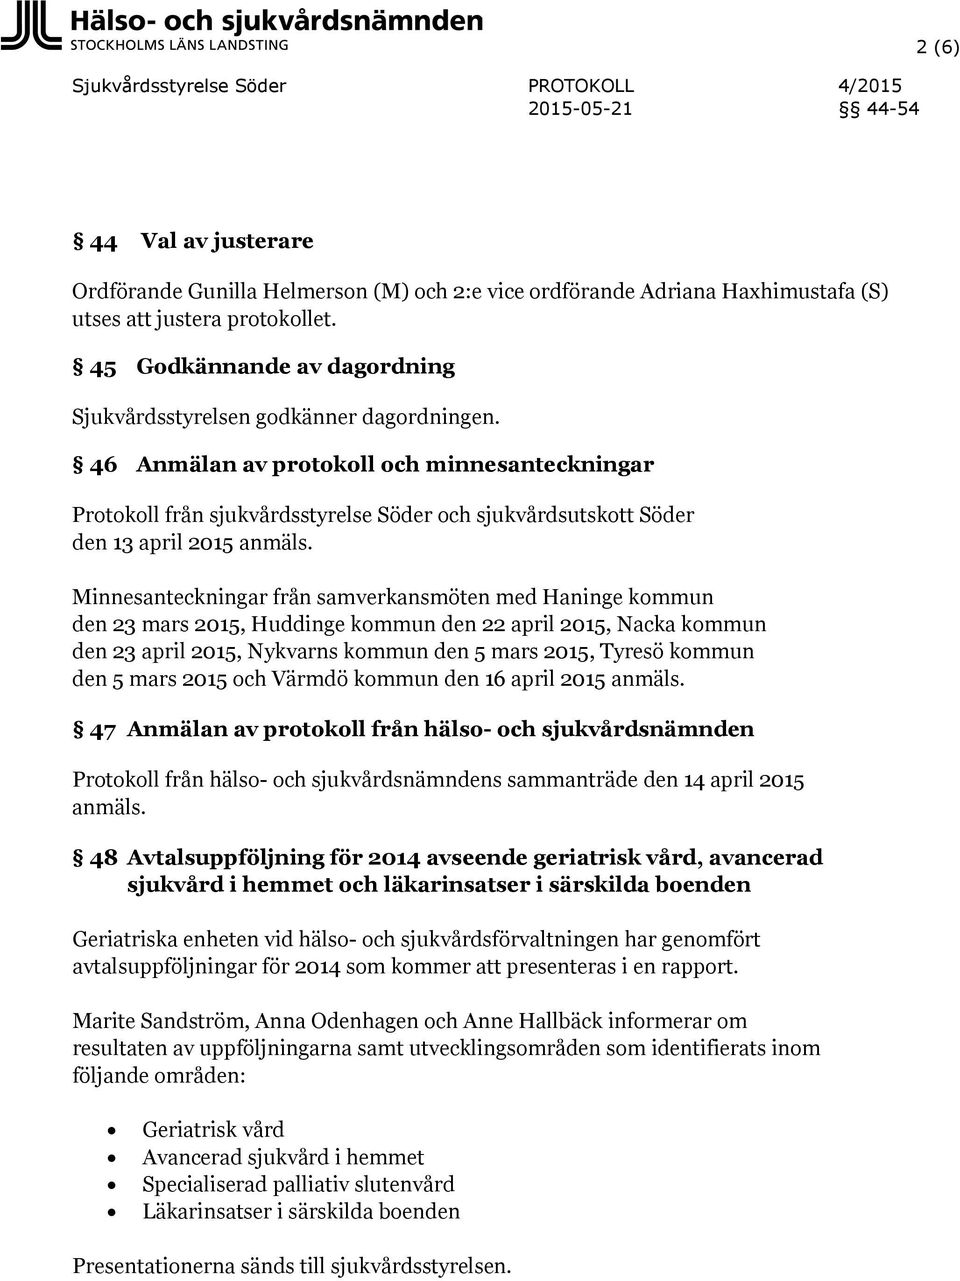 46 Anmälan av protokoll och minnesanteckningar Protokoll från sjukvårdsstyrelse Söder och sjukvårdsutskott Söder den 13 april 2015 anmäls.